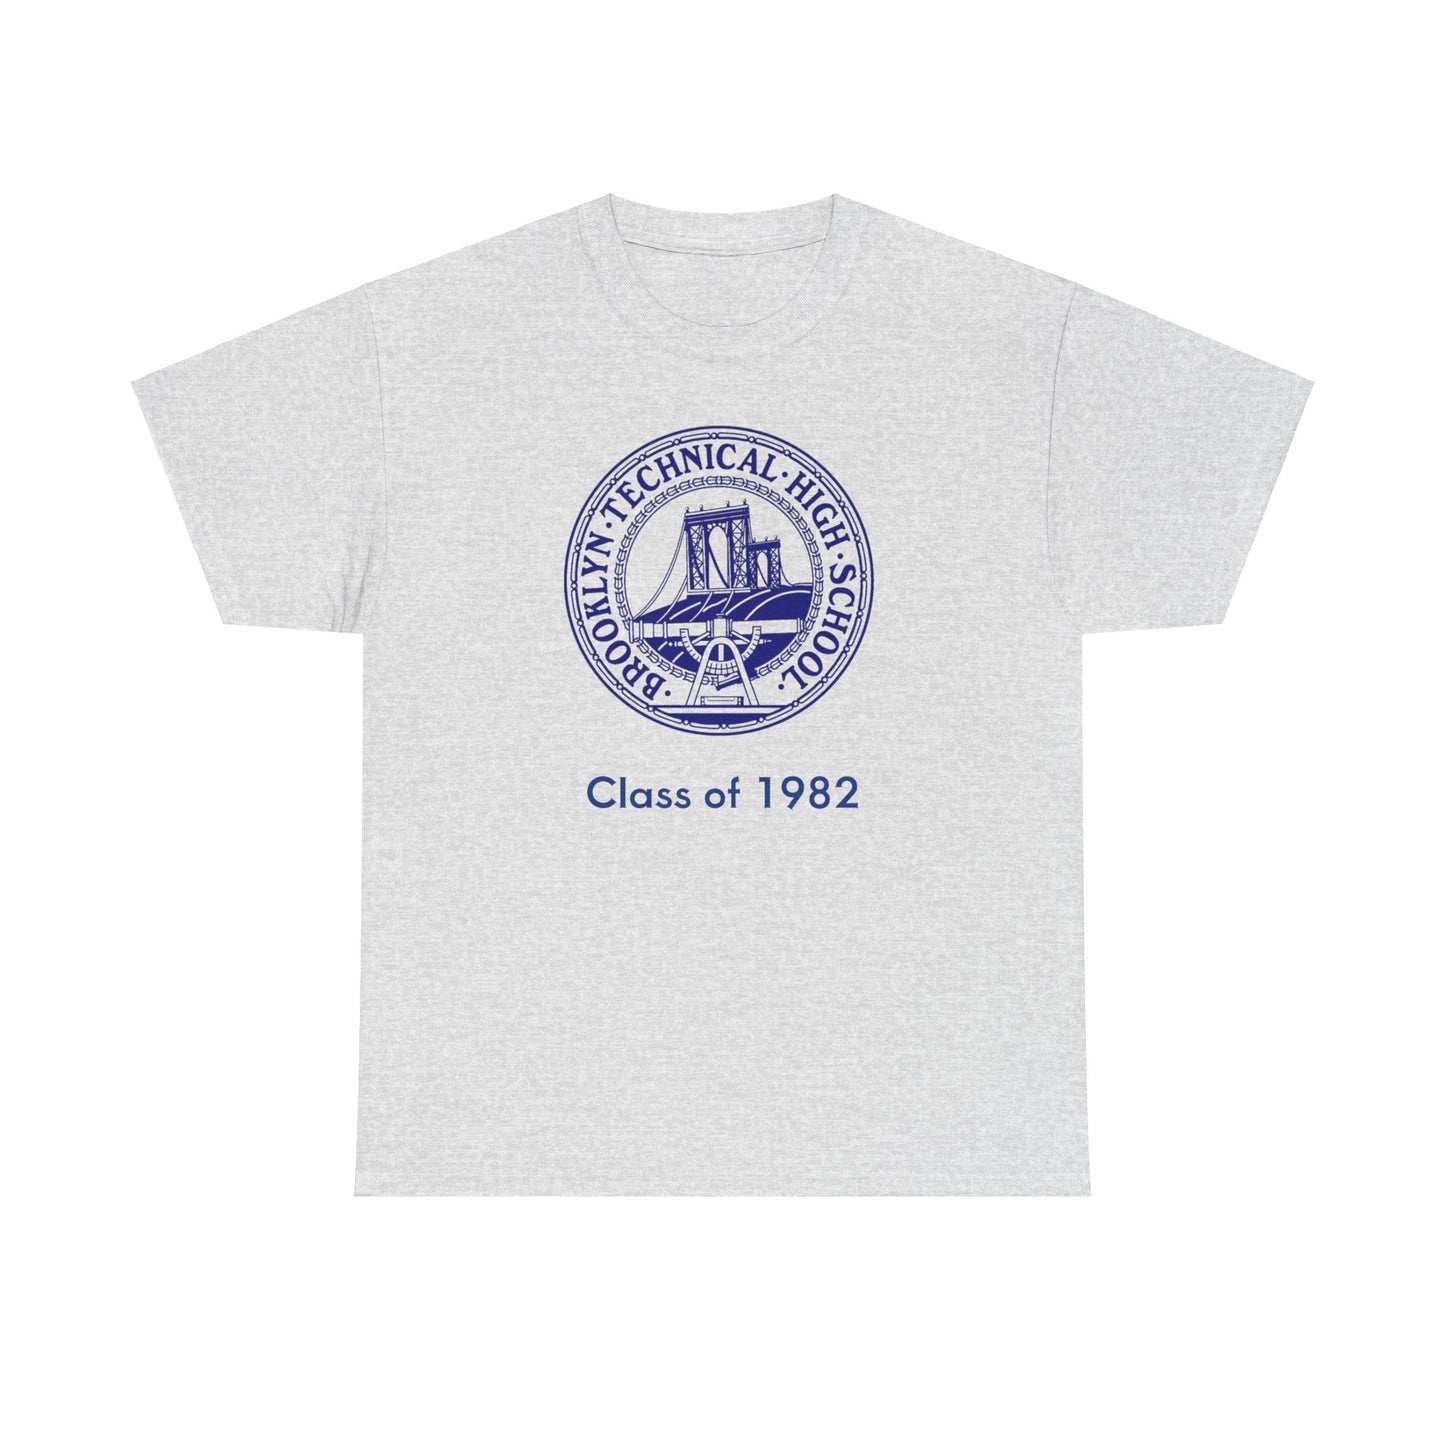 Classic Tech Seal - Men's Heavy Cotton T-Shirt - Class Of 1982